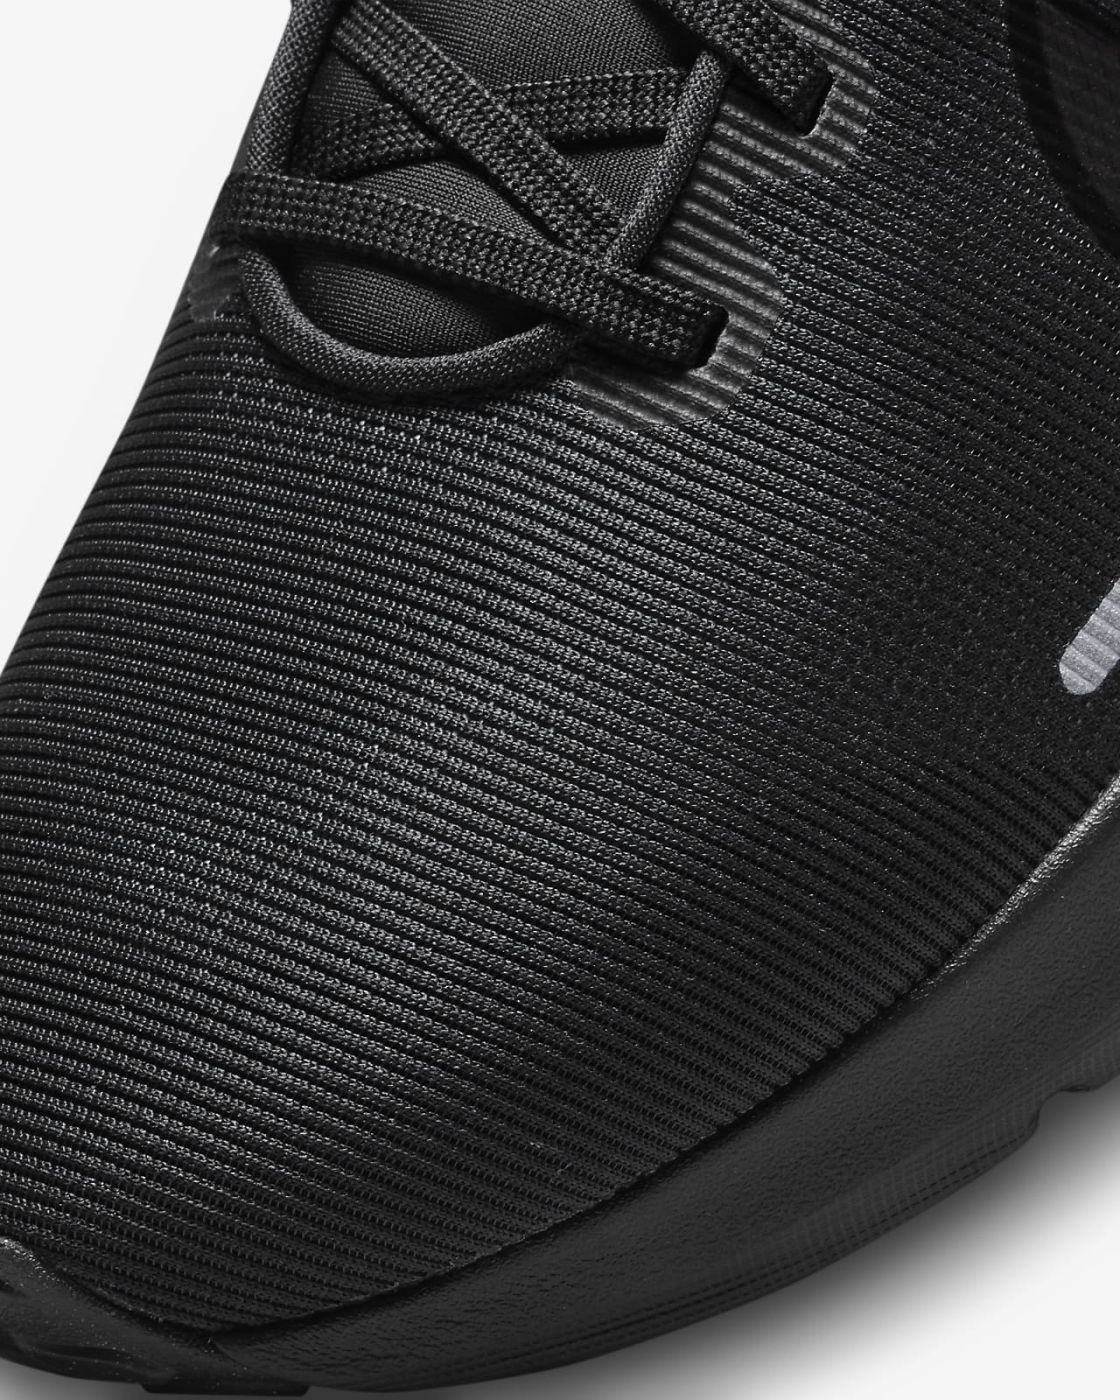 Giày Nike Downshifter 12 nhập Nhật